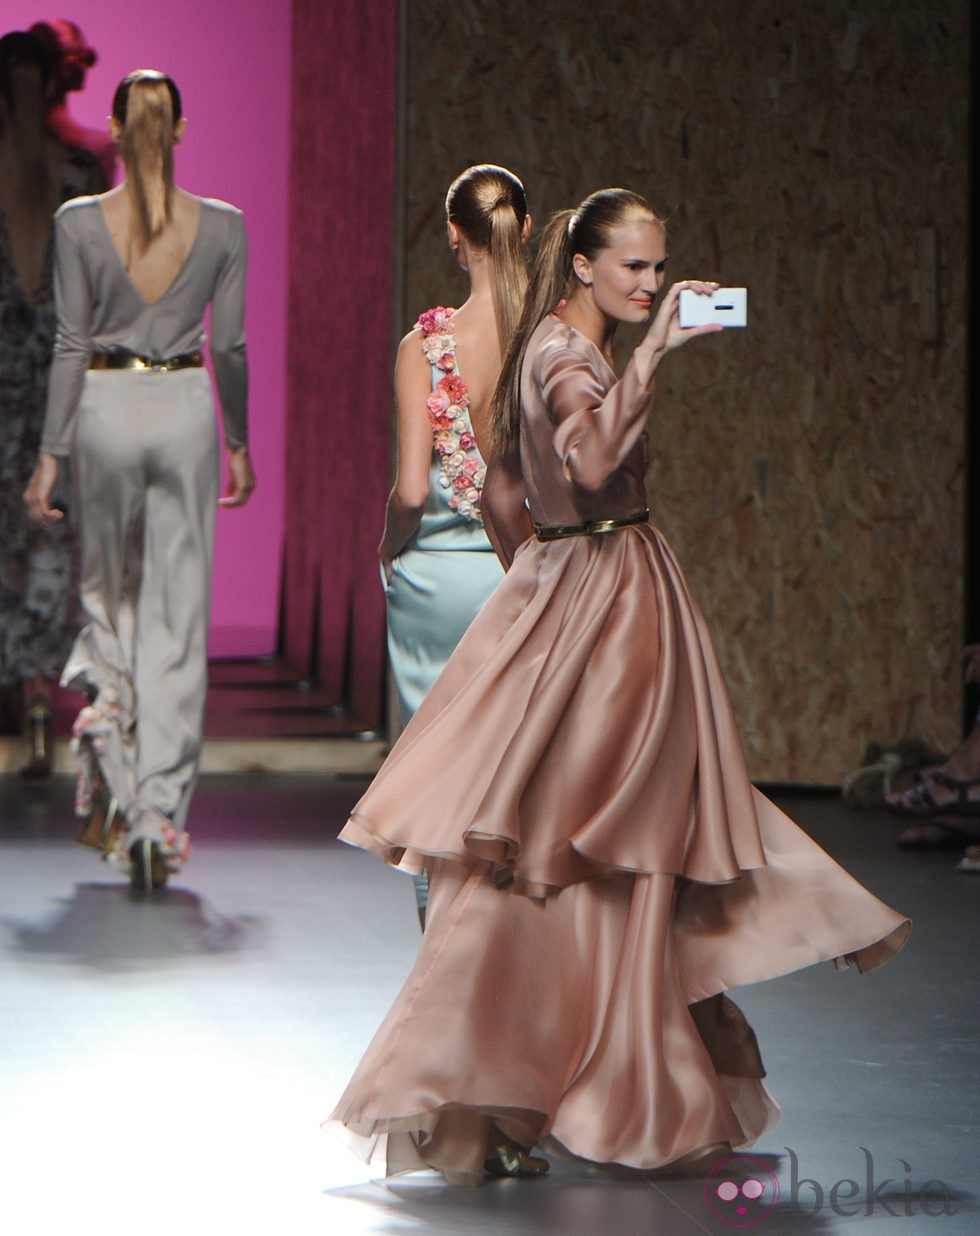 Alla Kostromichova con vestido largo vaporoso de la colección primavera-verano 2013 de Duyos